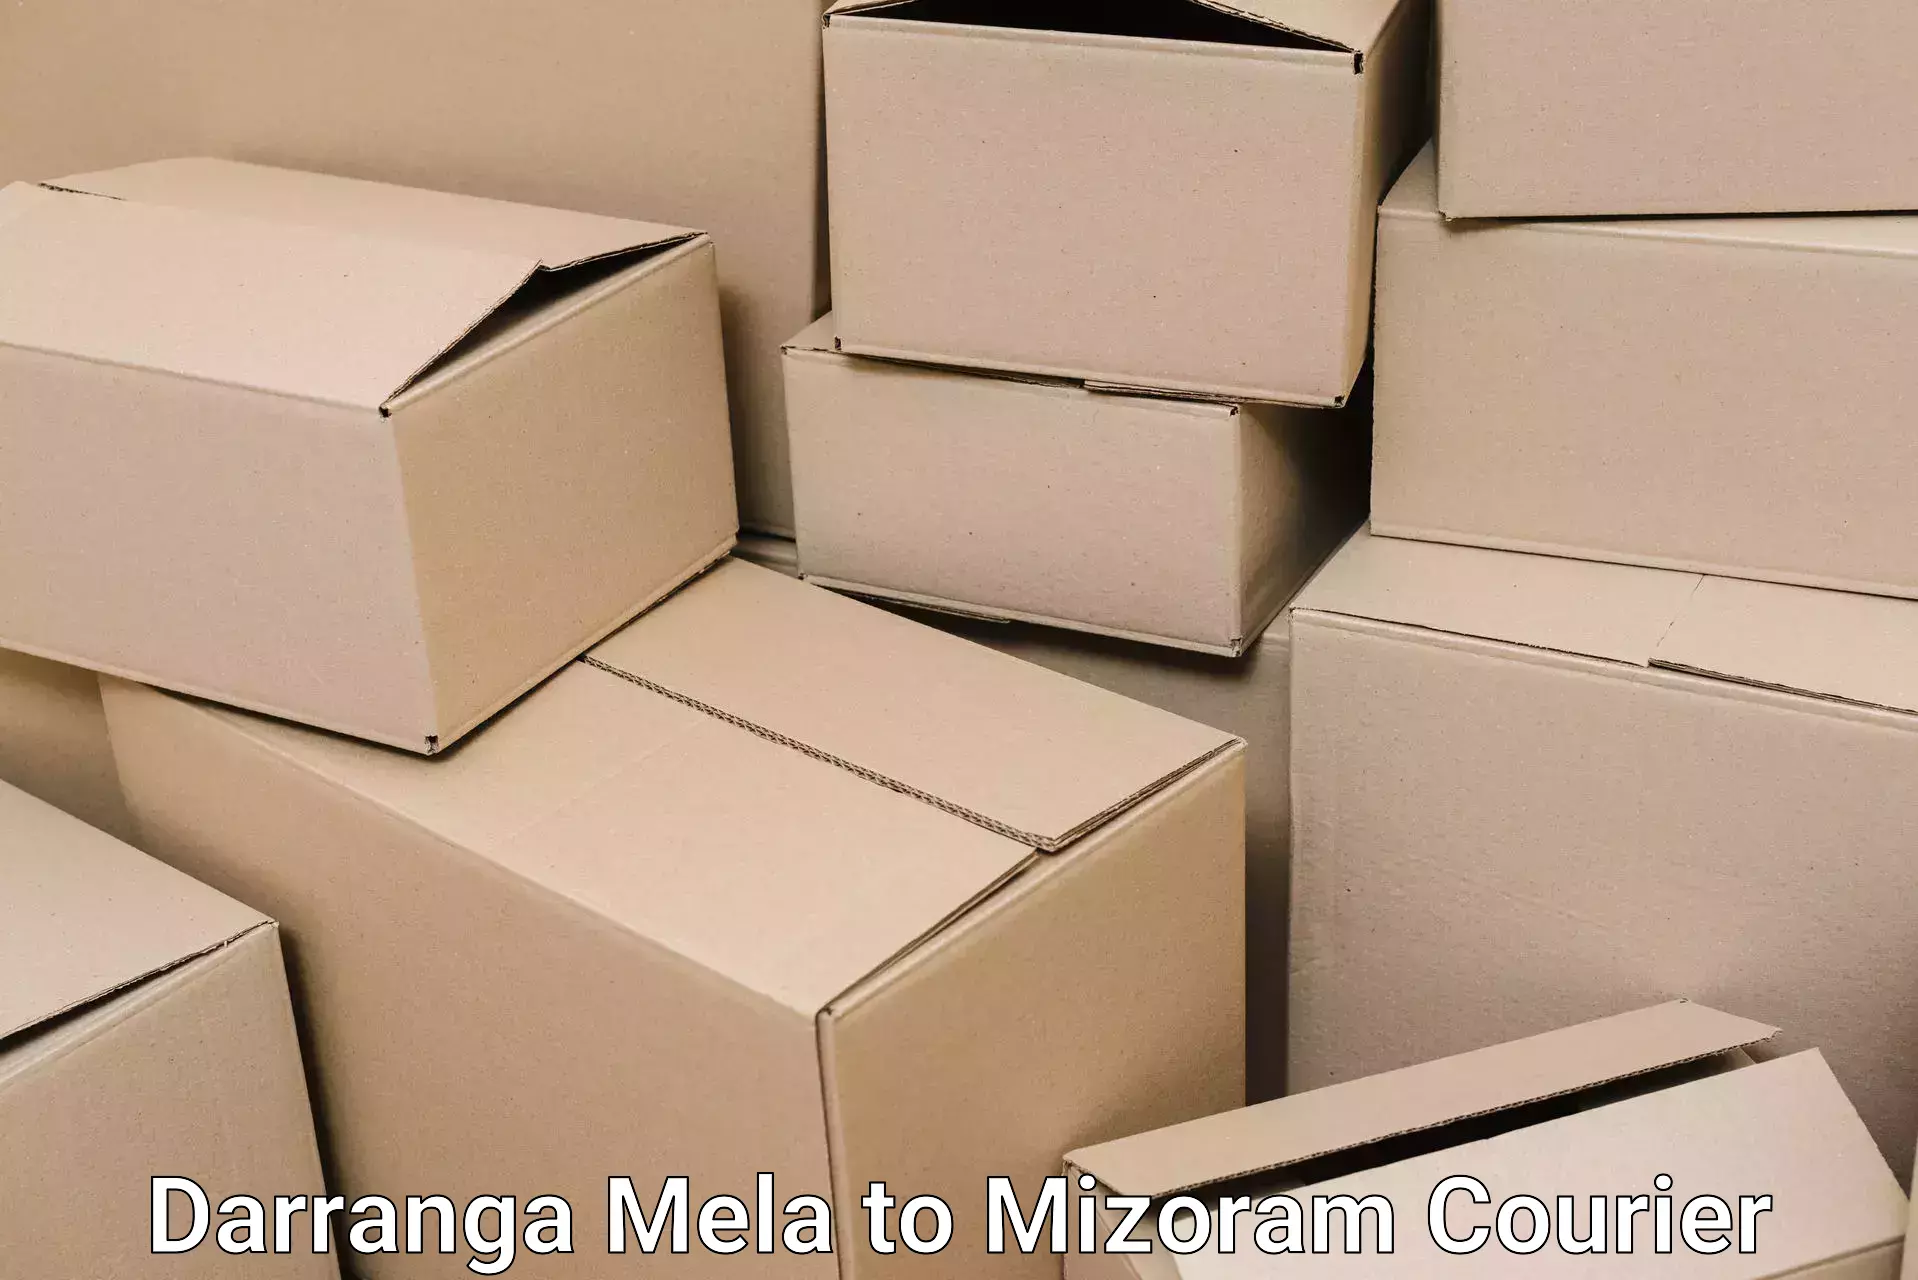 Furniture movers and packers Darranga Mela to Mizoram